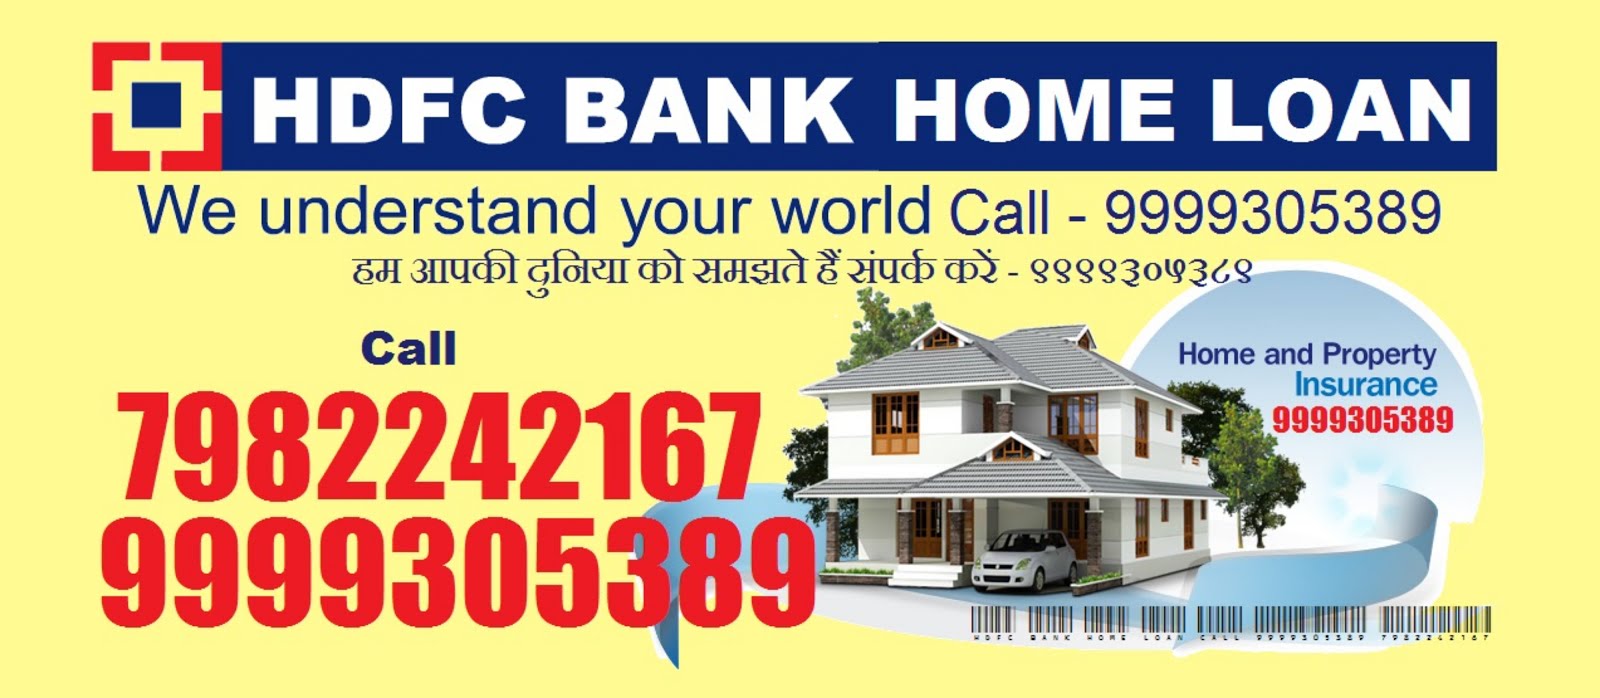 hdfc nri home loan customer care number